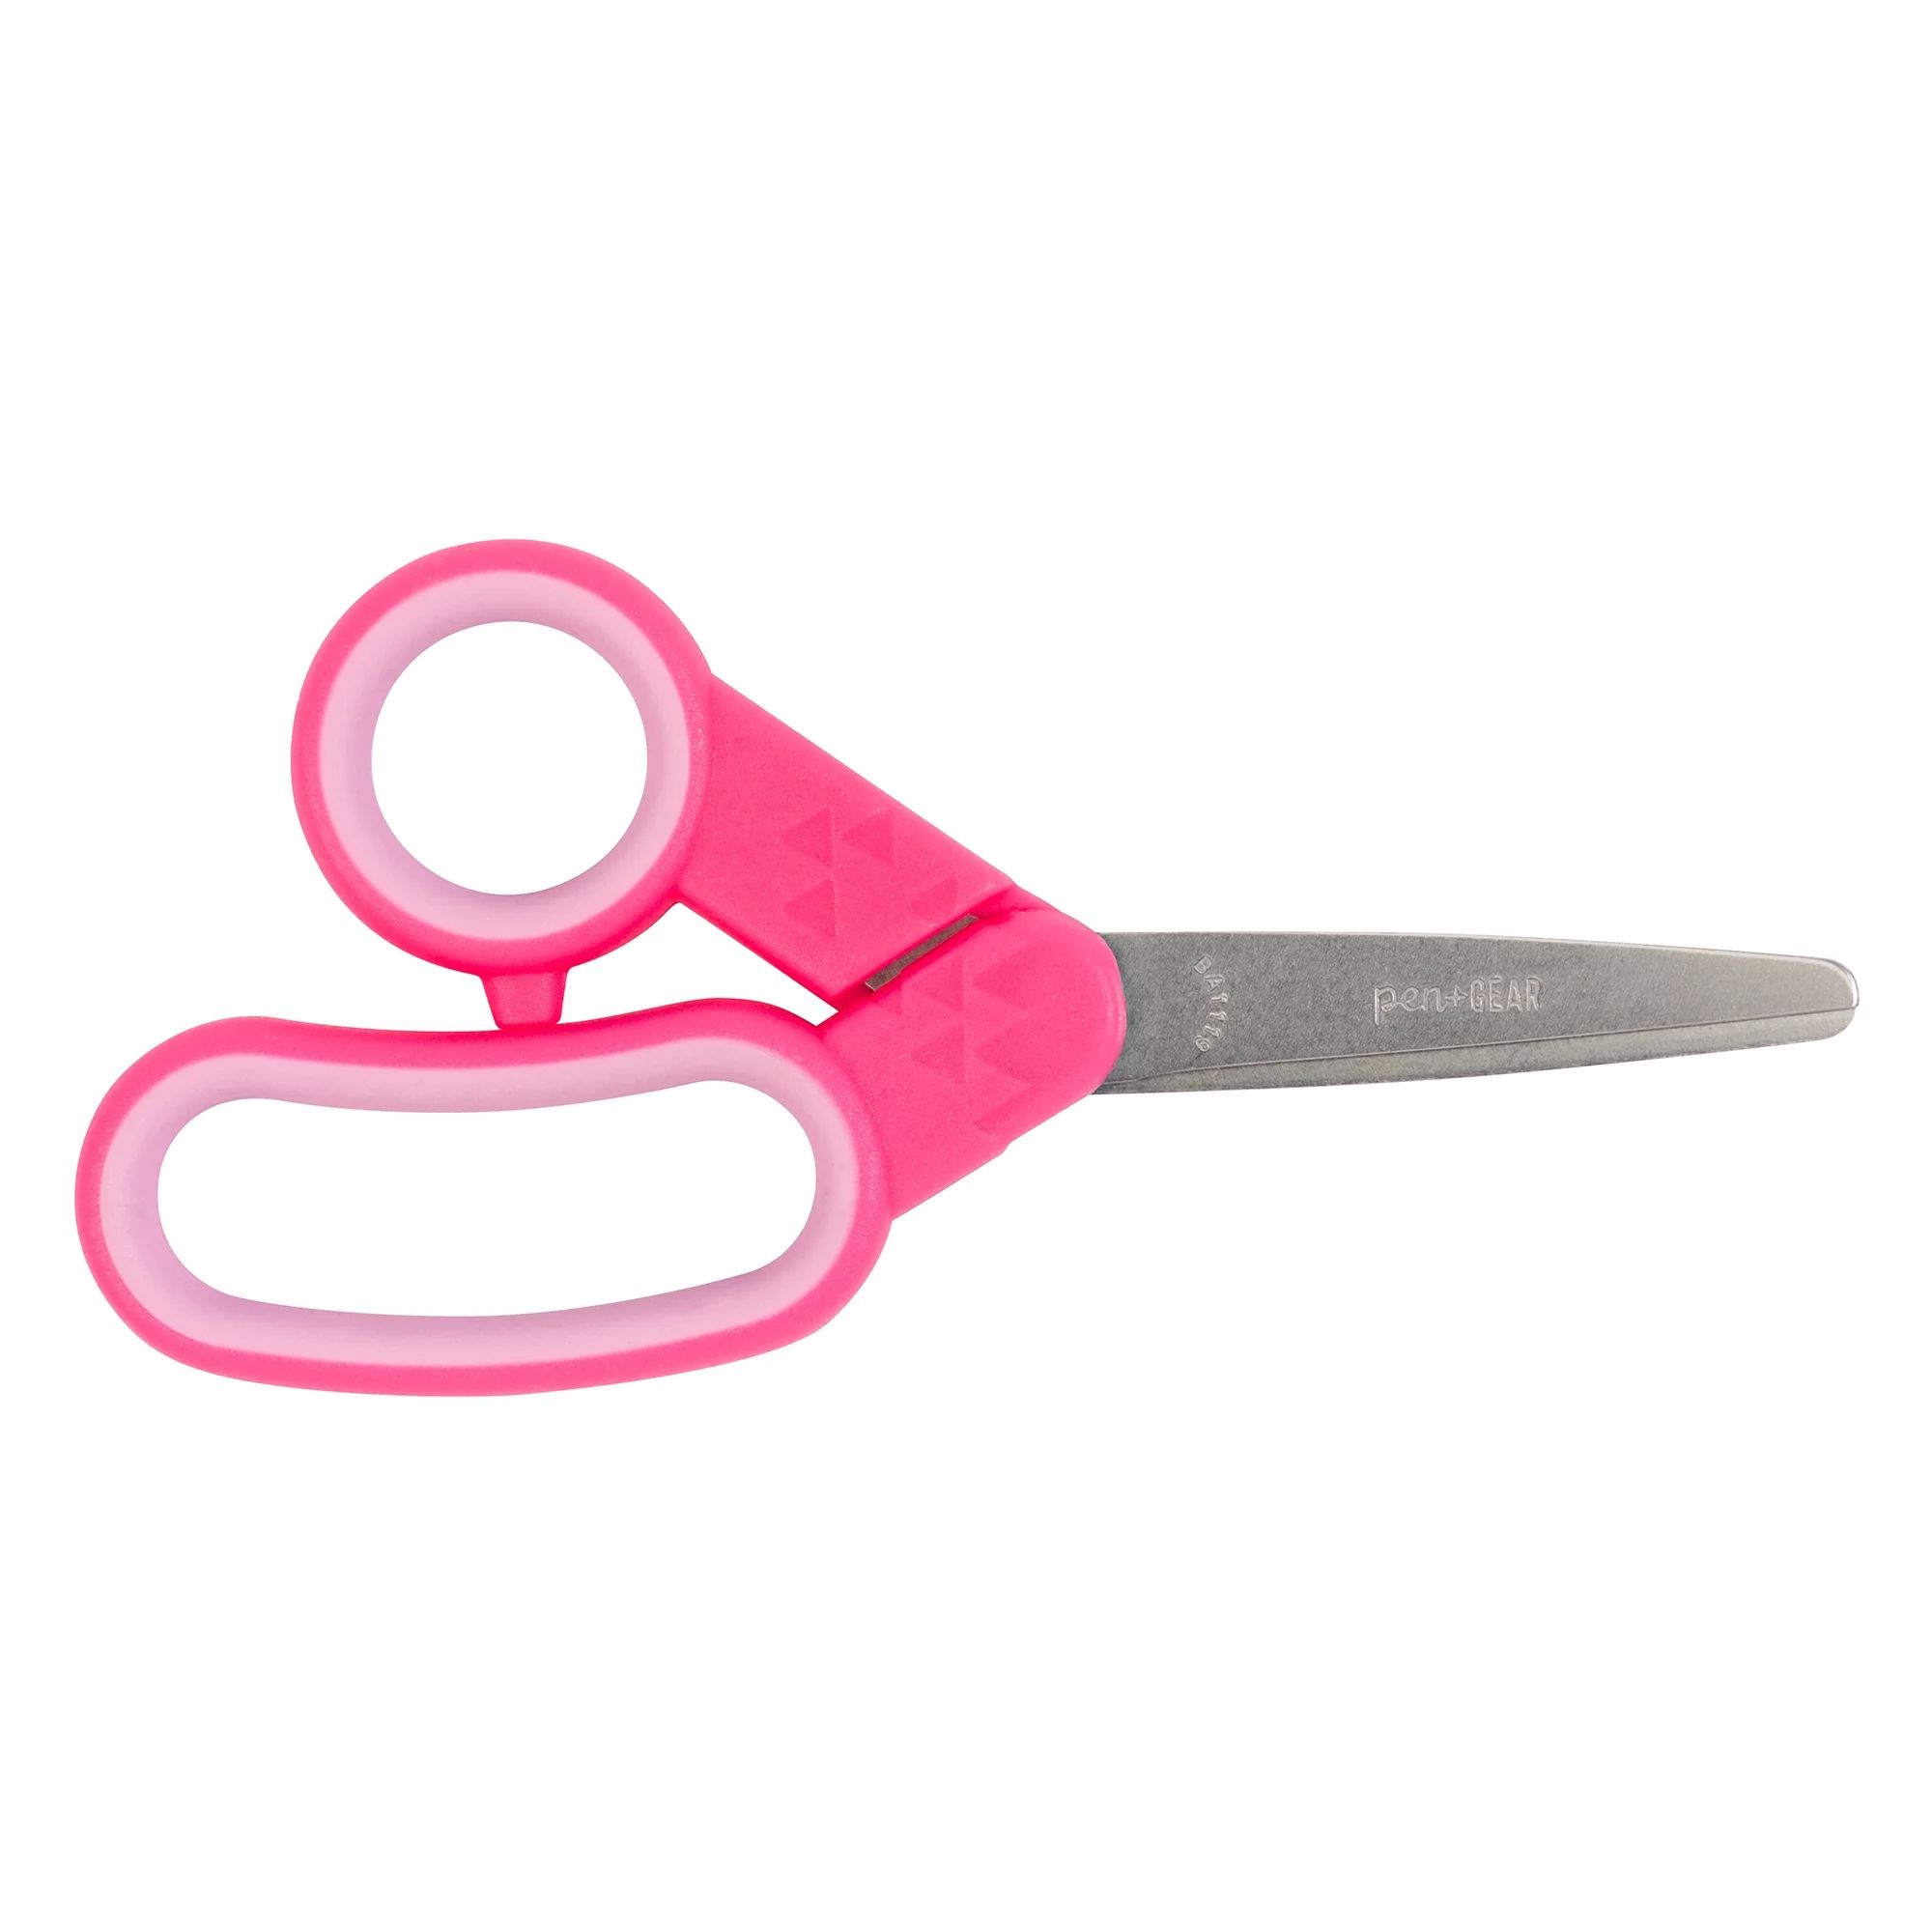 Pen + Gear Kids' Scissors, 5", Pink | Walmart (US)